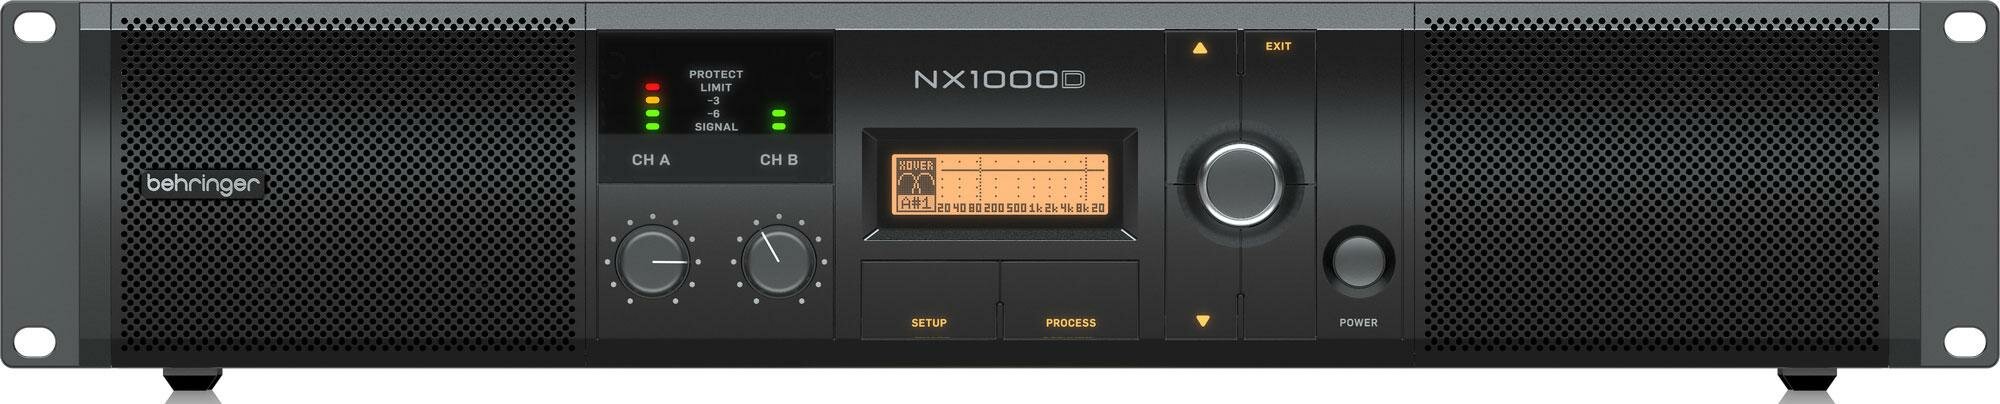 BEHRINGER NX1000D профессиональный усилитель мощности с DSP 1000 Вт, 2 х 500 Вт при 2 Ом 2 х 300 Вт при 4 Ом 1000 Вт при 4 Ом (режим бриджа)